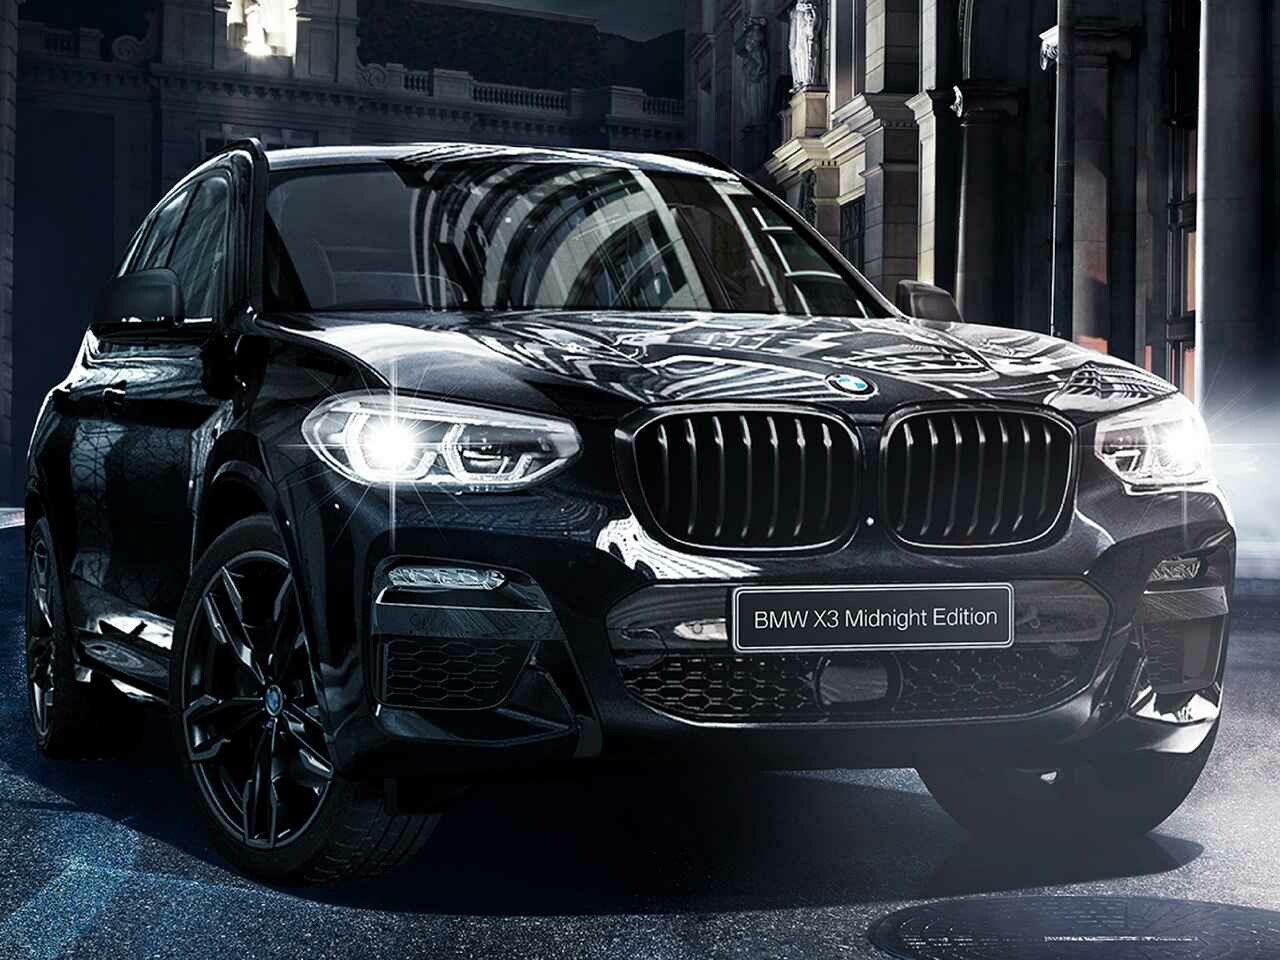 BMW X3 xDrive20dミッドナイトエディションは130台限定。ボディカラーもグリルも外観はすべて“黒”